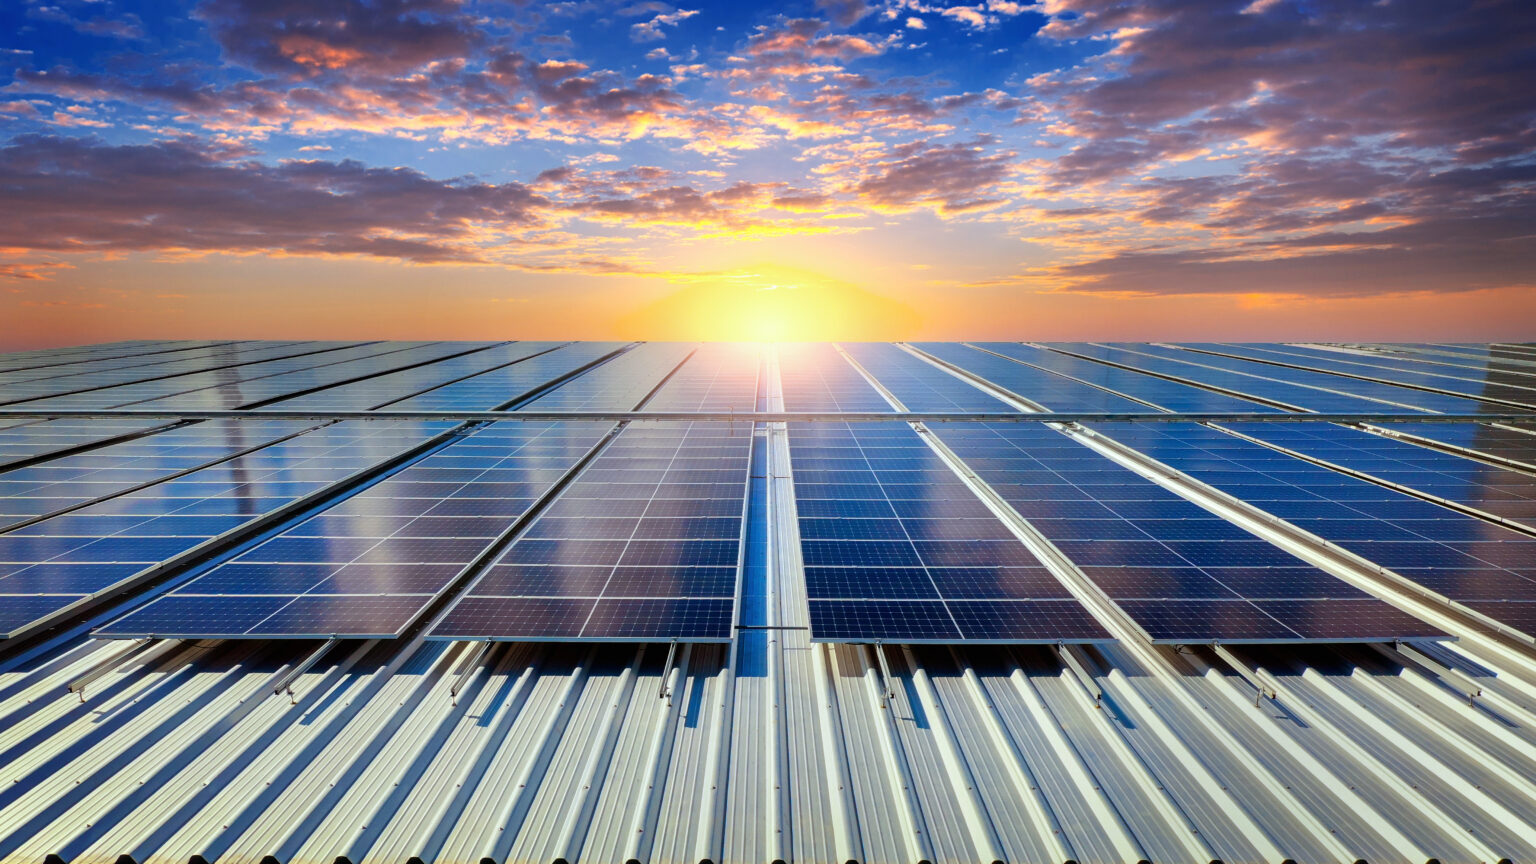 Joint venture entre Gerdau e Newave investirá R$ 1,4bi em megausina solar em Arinos, Minas Gerais